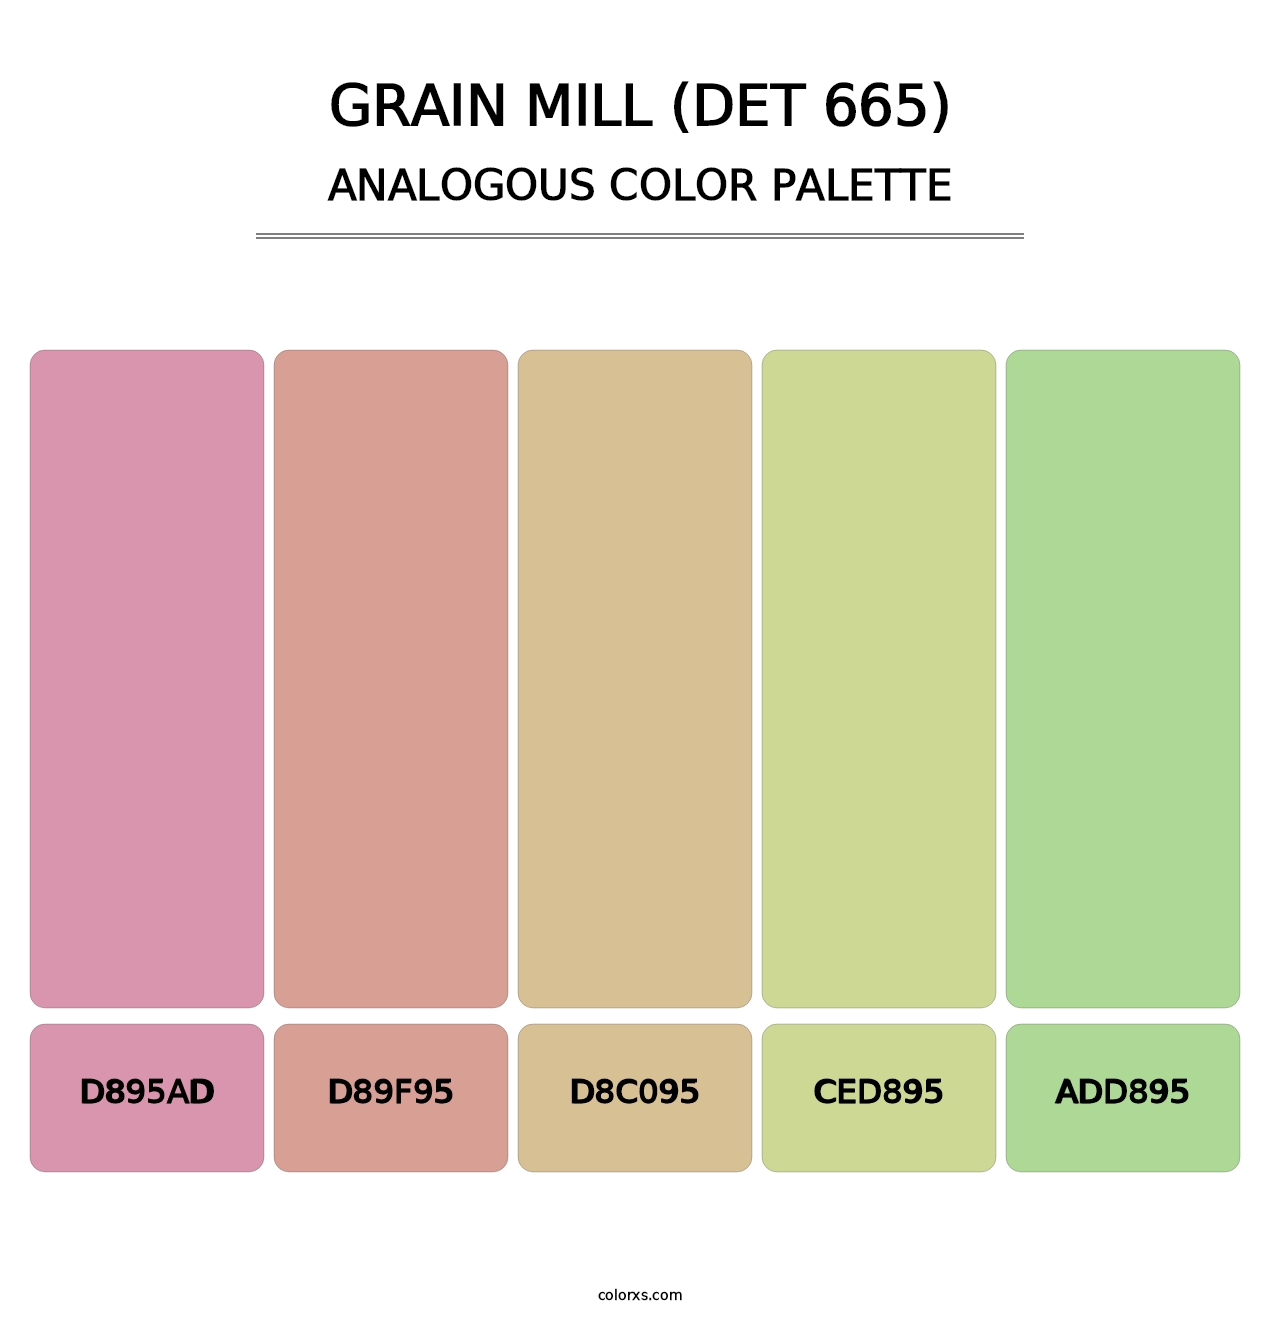 Grain Mill (DET 665) - Analogous Color Palette